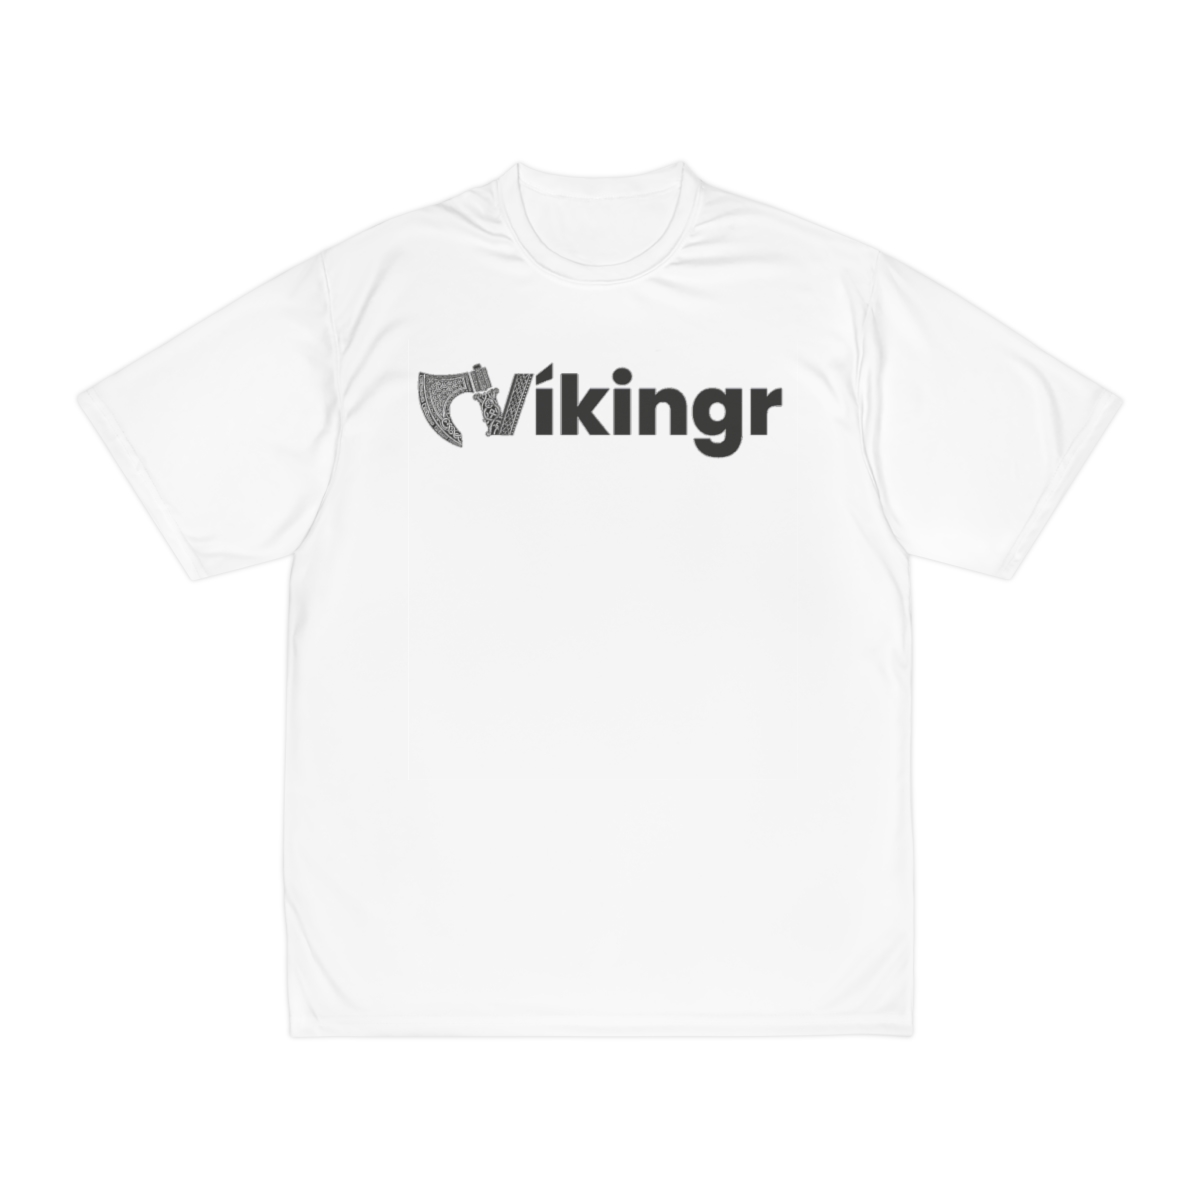 Vikingr Classic – Men’s Sports T-Shirt